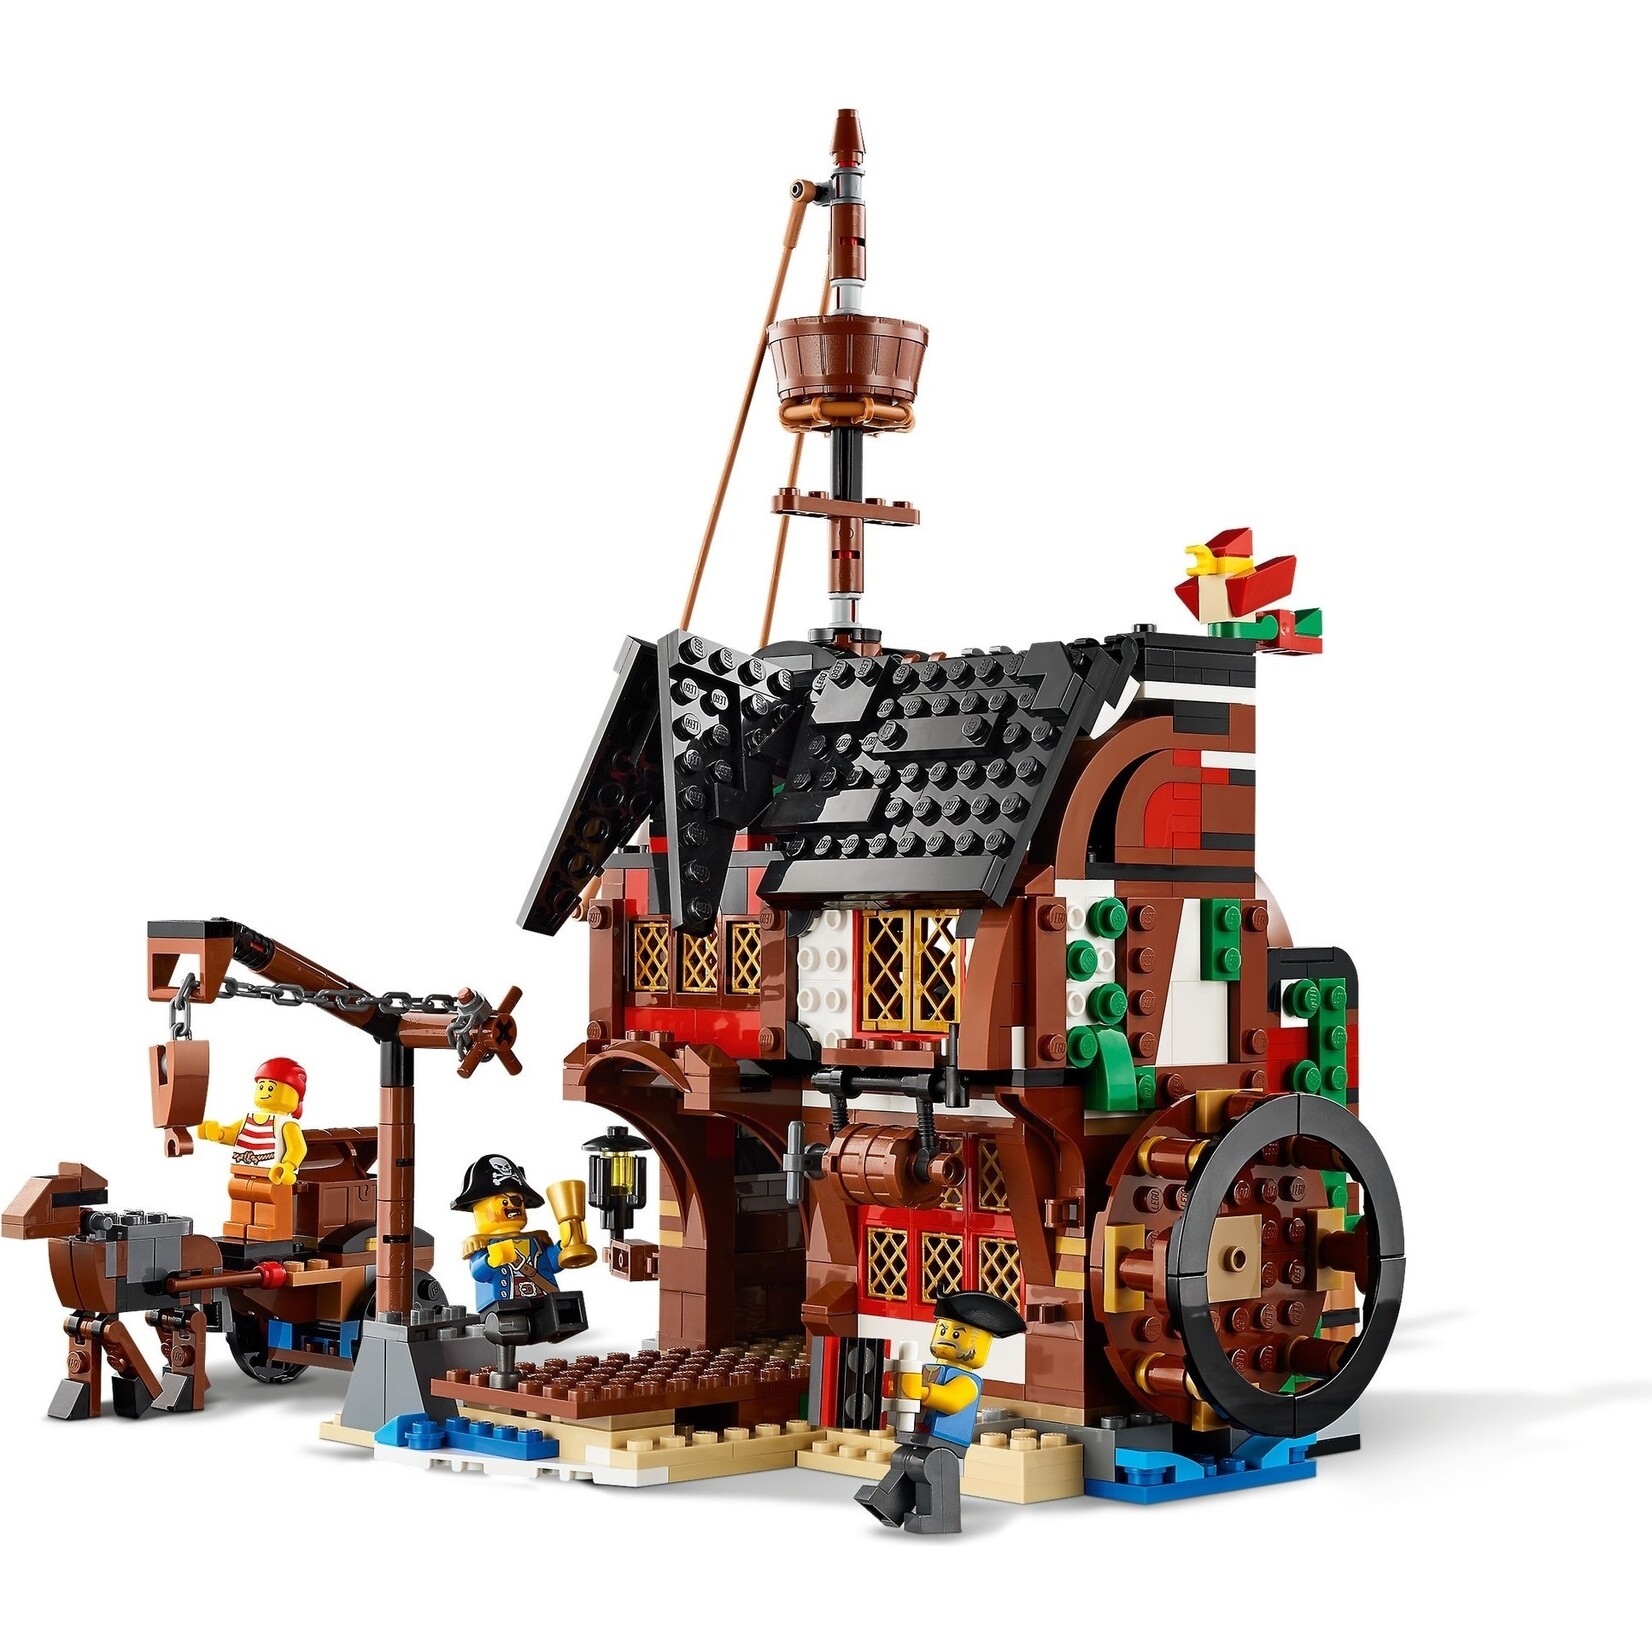 LEGO Piratenschip - 31109